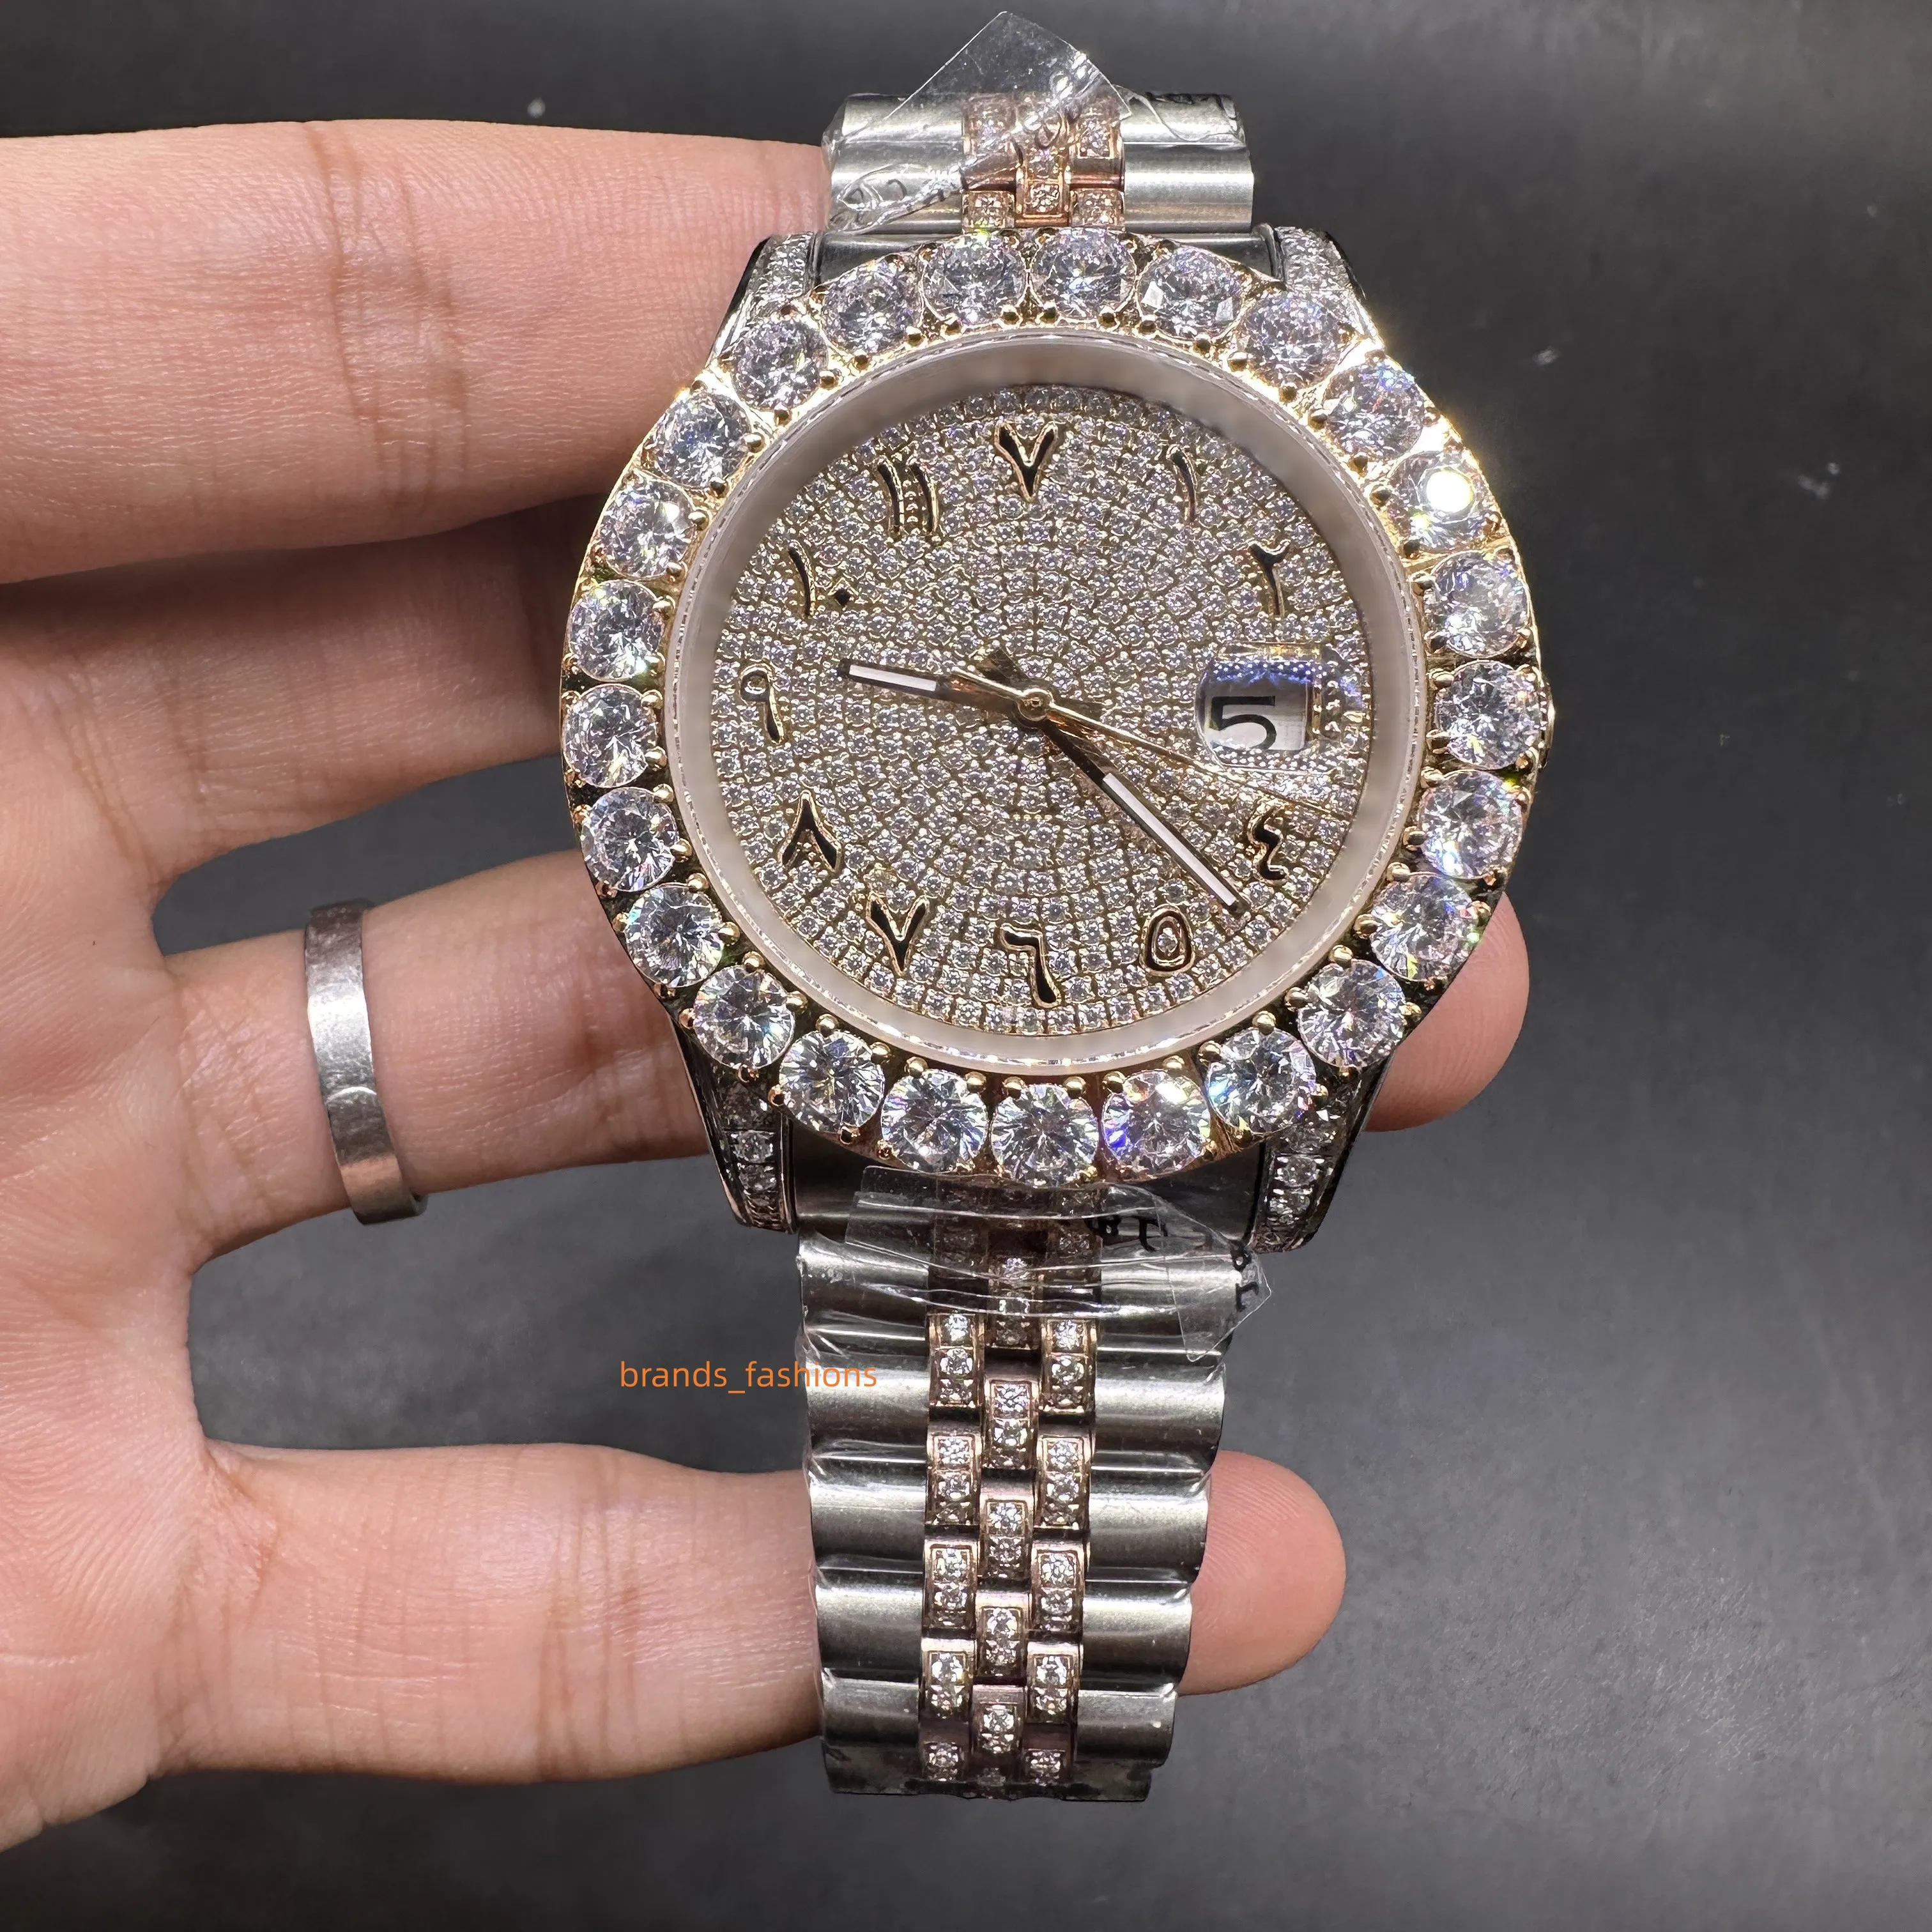 2023 Ny populära herrklockor Set Diamond Iced Wristwatch Handgjorda diamant inlagda rostfritt stål Automatiska klockor Arabisk siffra skala 43mm